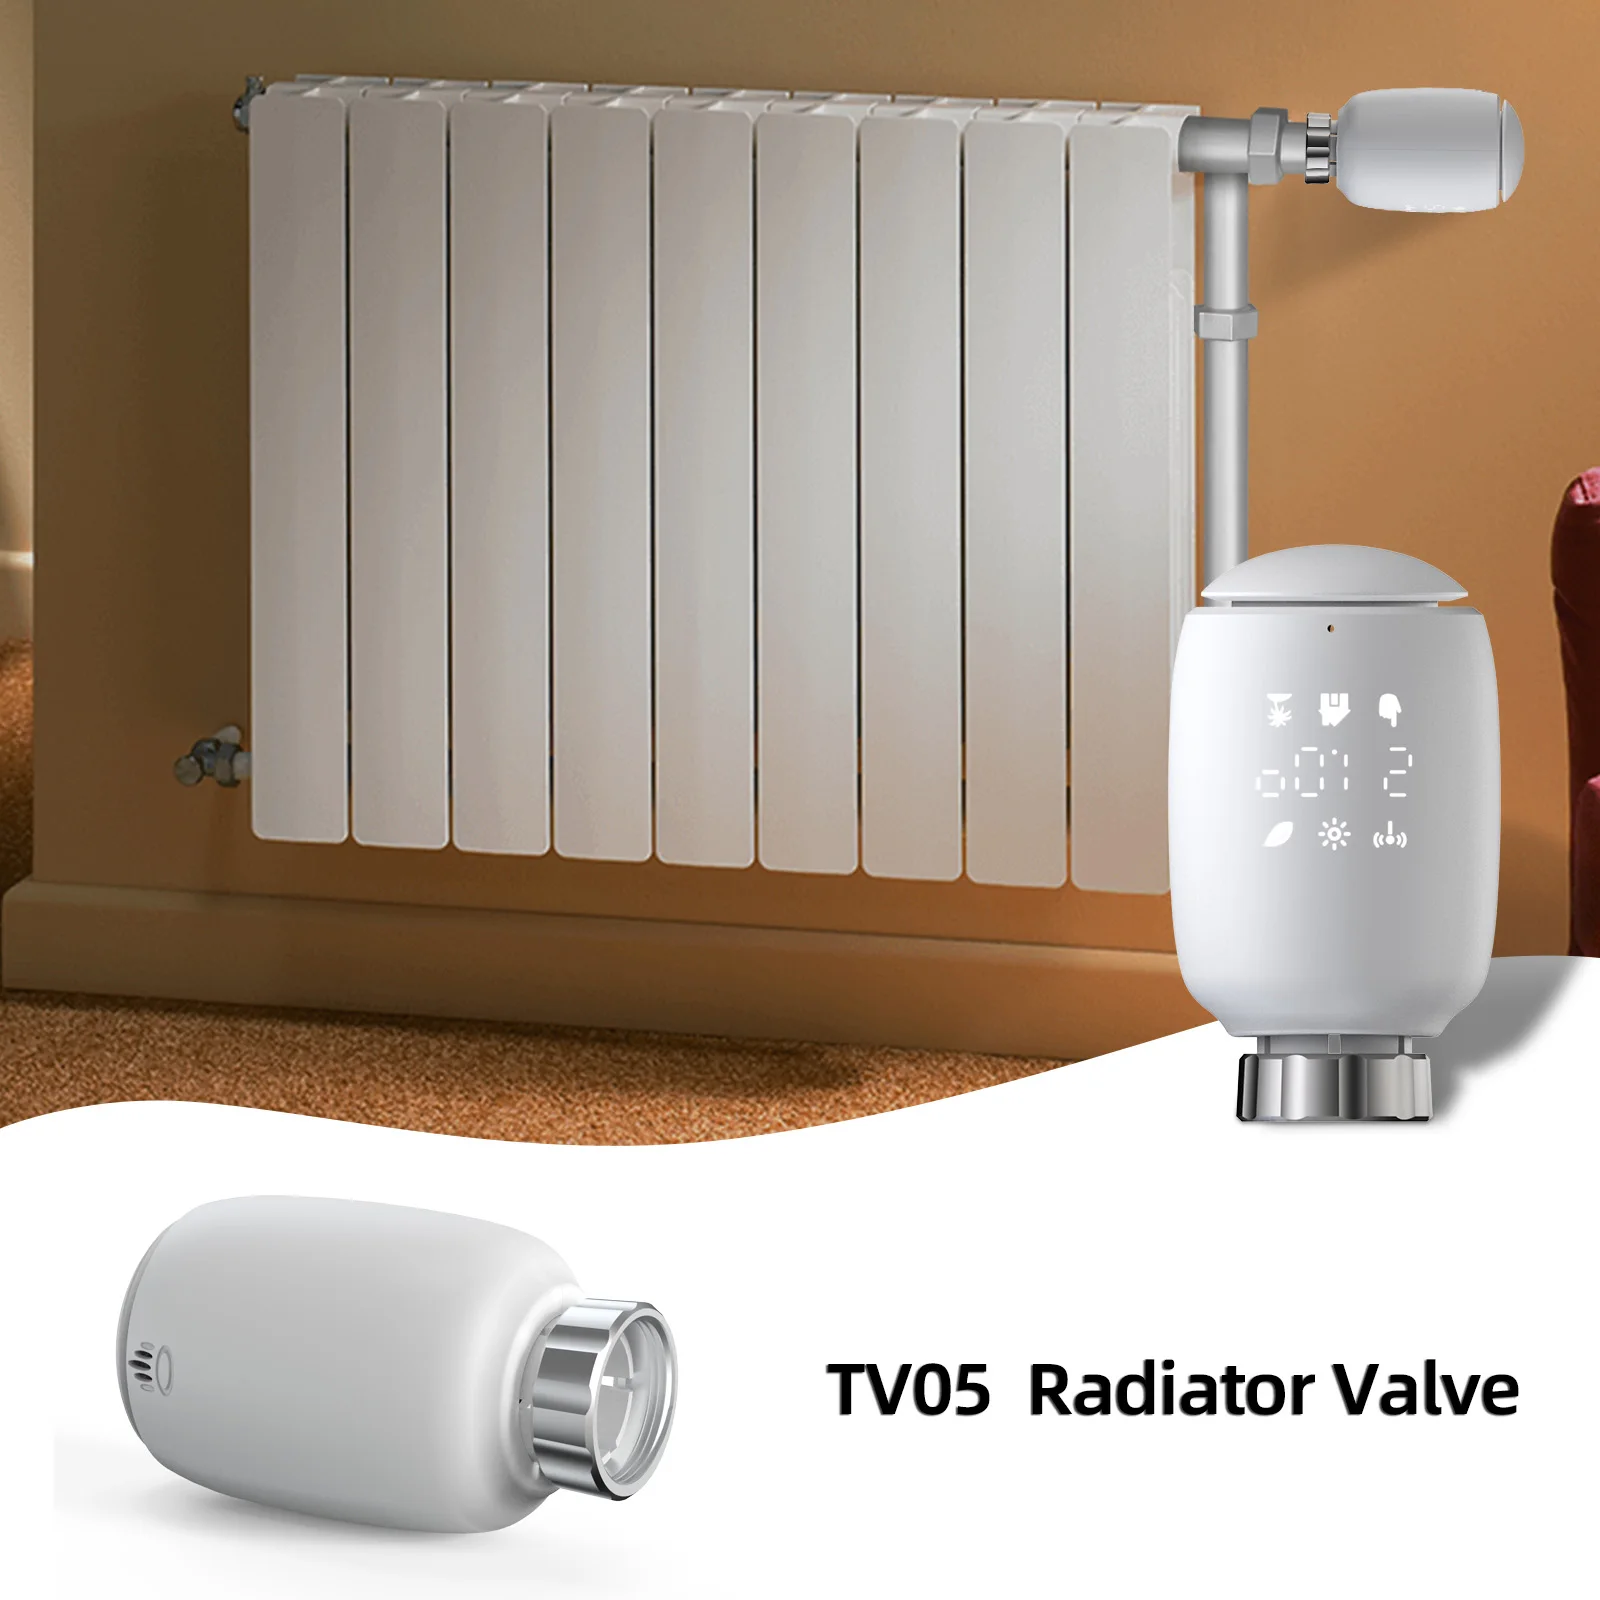 Интеллектуальный батареи. Aqara Smart Radiator thermostat. Aqara Smart Radiator thermostat е1 SRTS-a01. Aqara thermostat e1. Радиаторы отопления Керми т10.